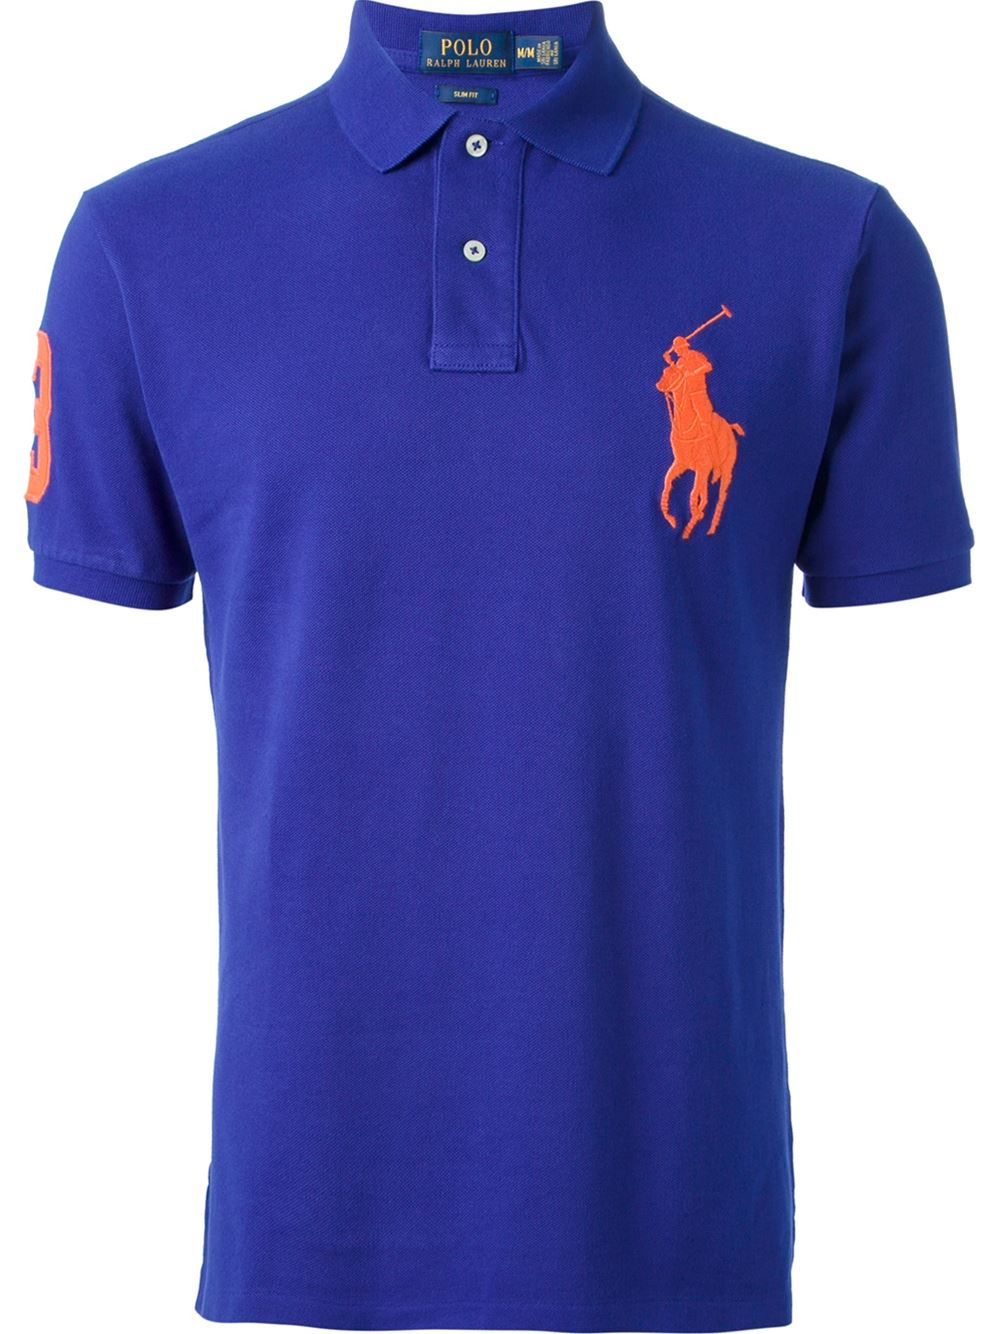 Lyst - Polo Ralph Lauren Oversized Logo Slim Fit Polo Shirt in Blue for Men